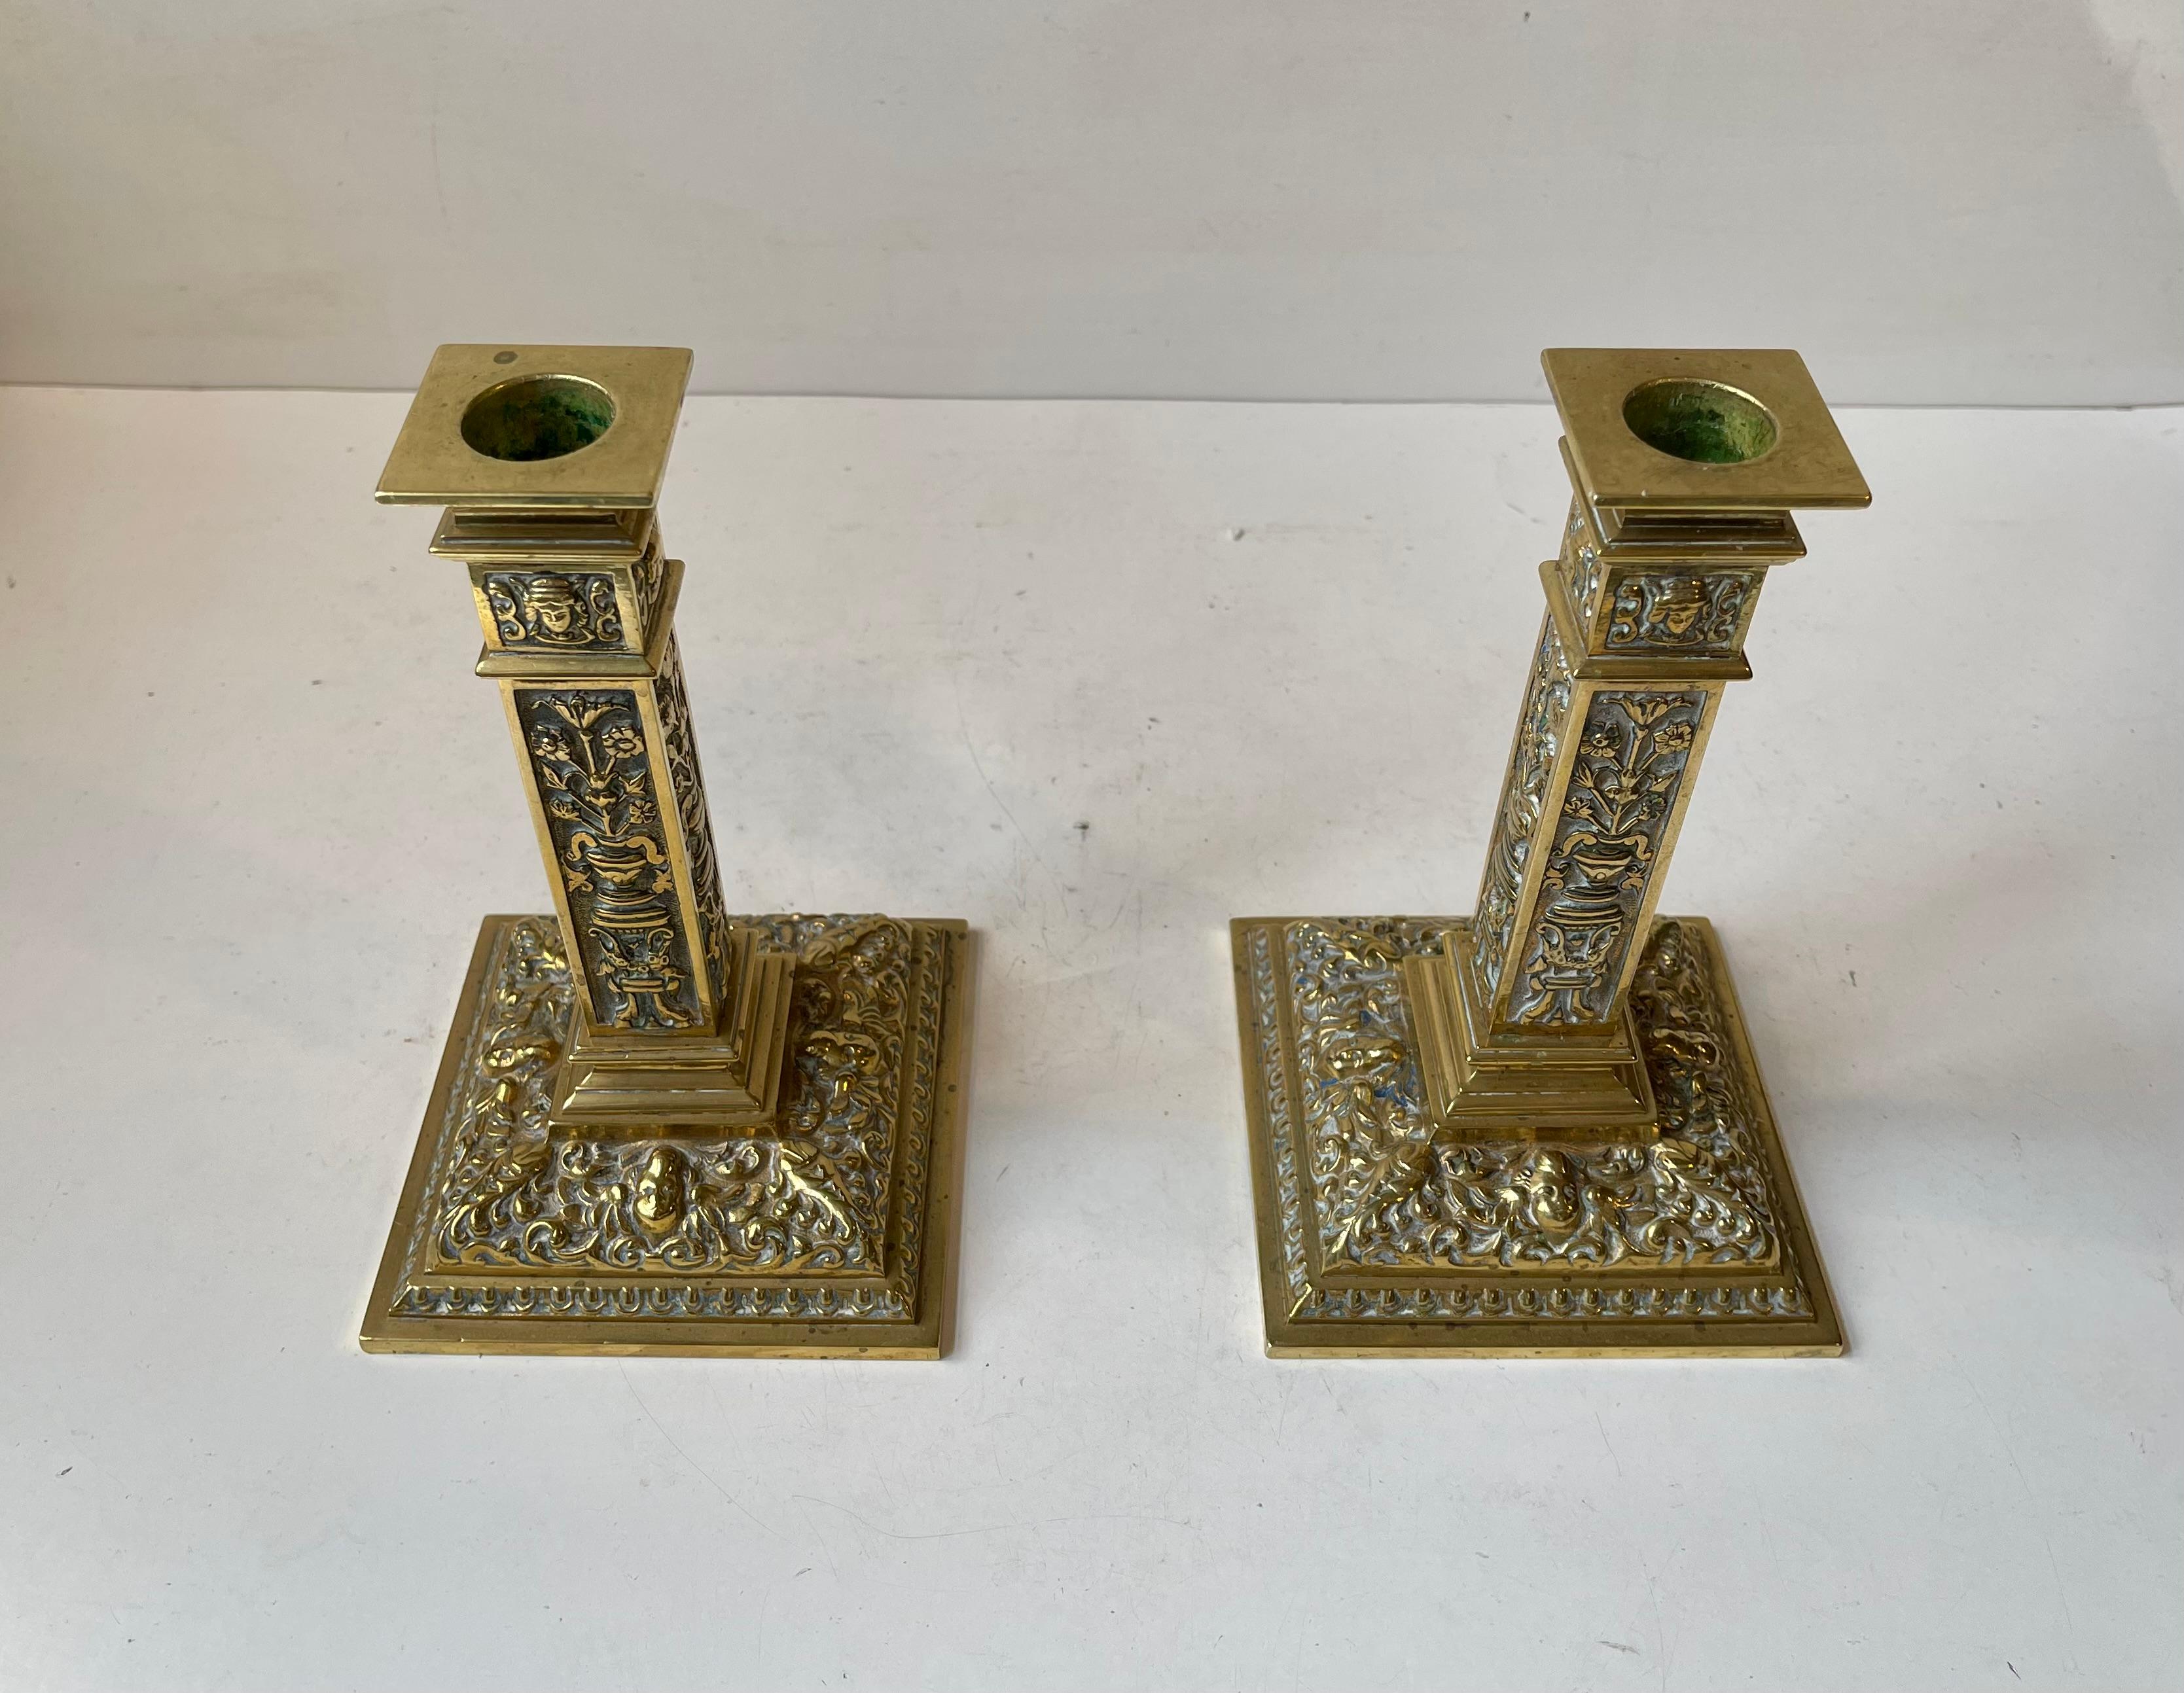 Paar seltene antike viktorianische Clarke's vergoldete Ormolu-Bronze-Kerzenhalter aus dem 19. Neoklassizistischer Stil. Hergestellt von Samuel Clarke aus Cricklewood in London um 1880-1890 in der W. S. Foundry. Feinste englische Handwerkskunst in